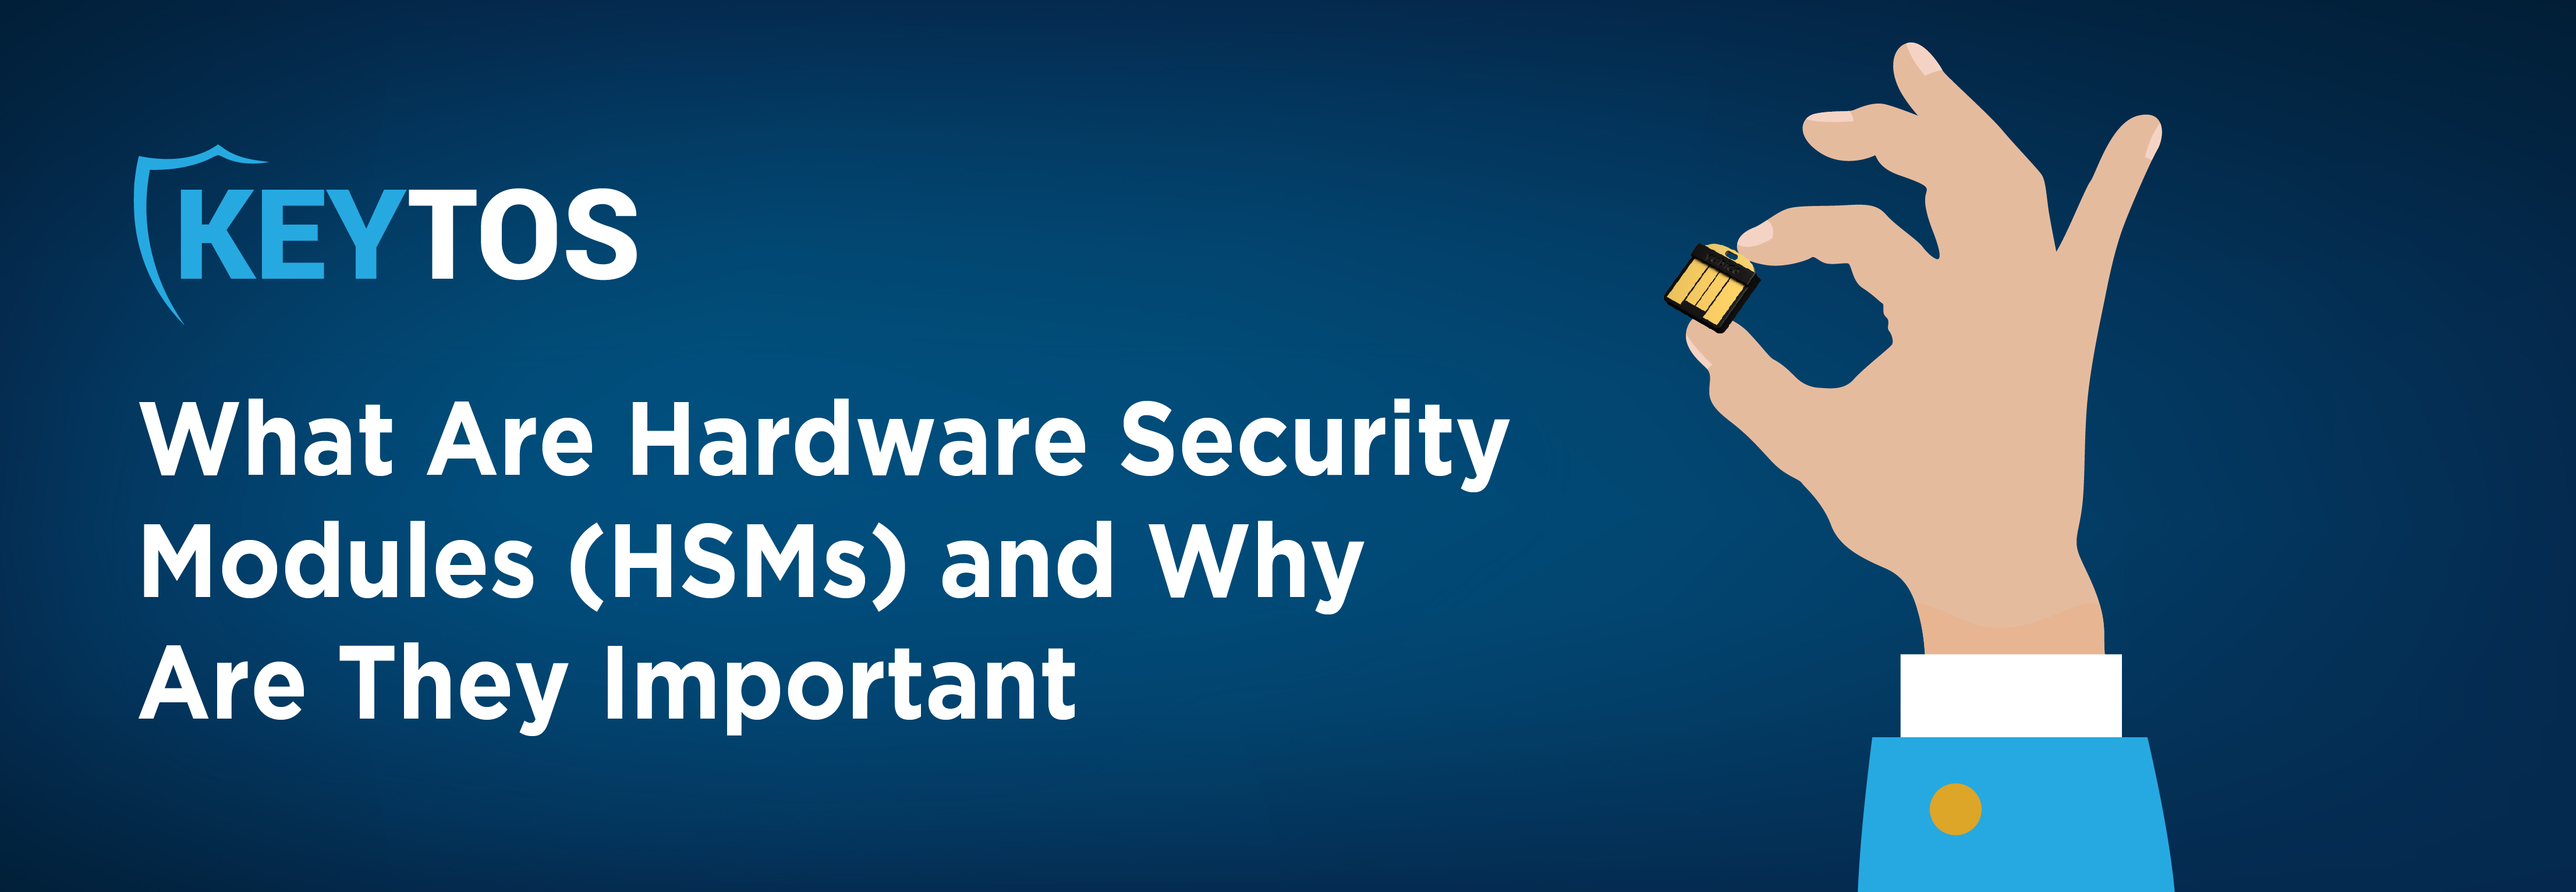 ¿Qué son los HSM? ¿Por qué son importantes los módulos de seguridad de hardware?